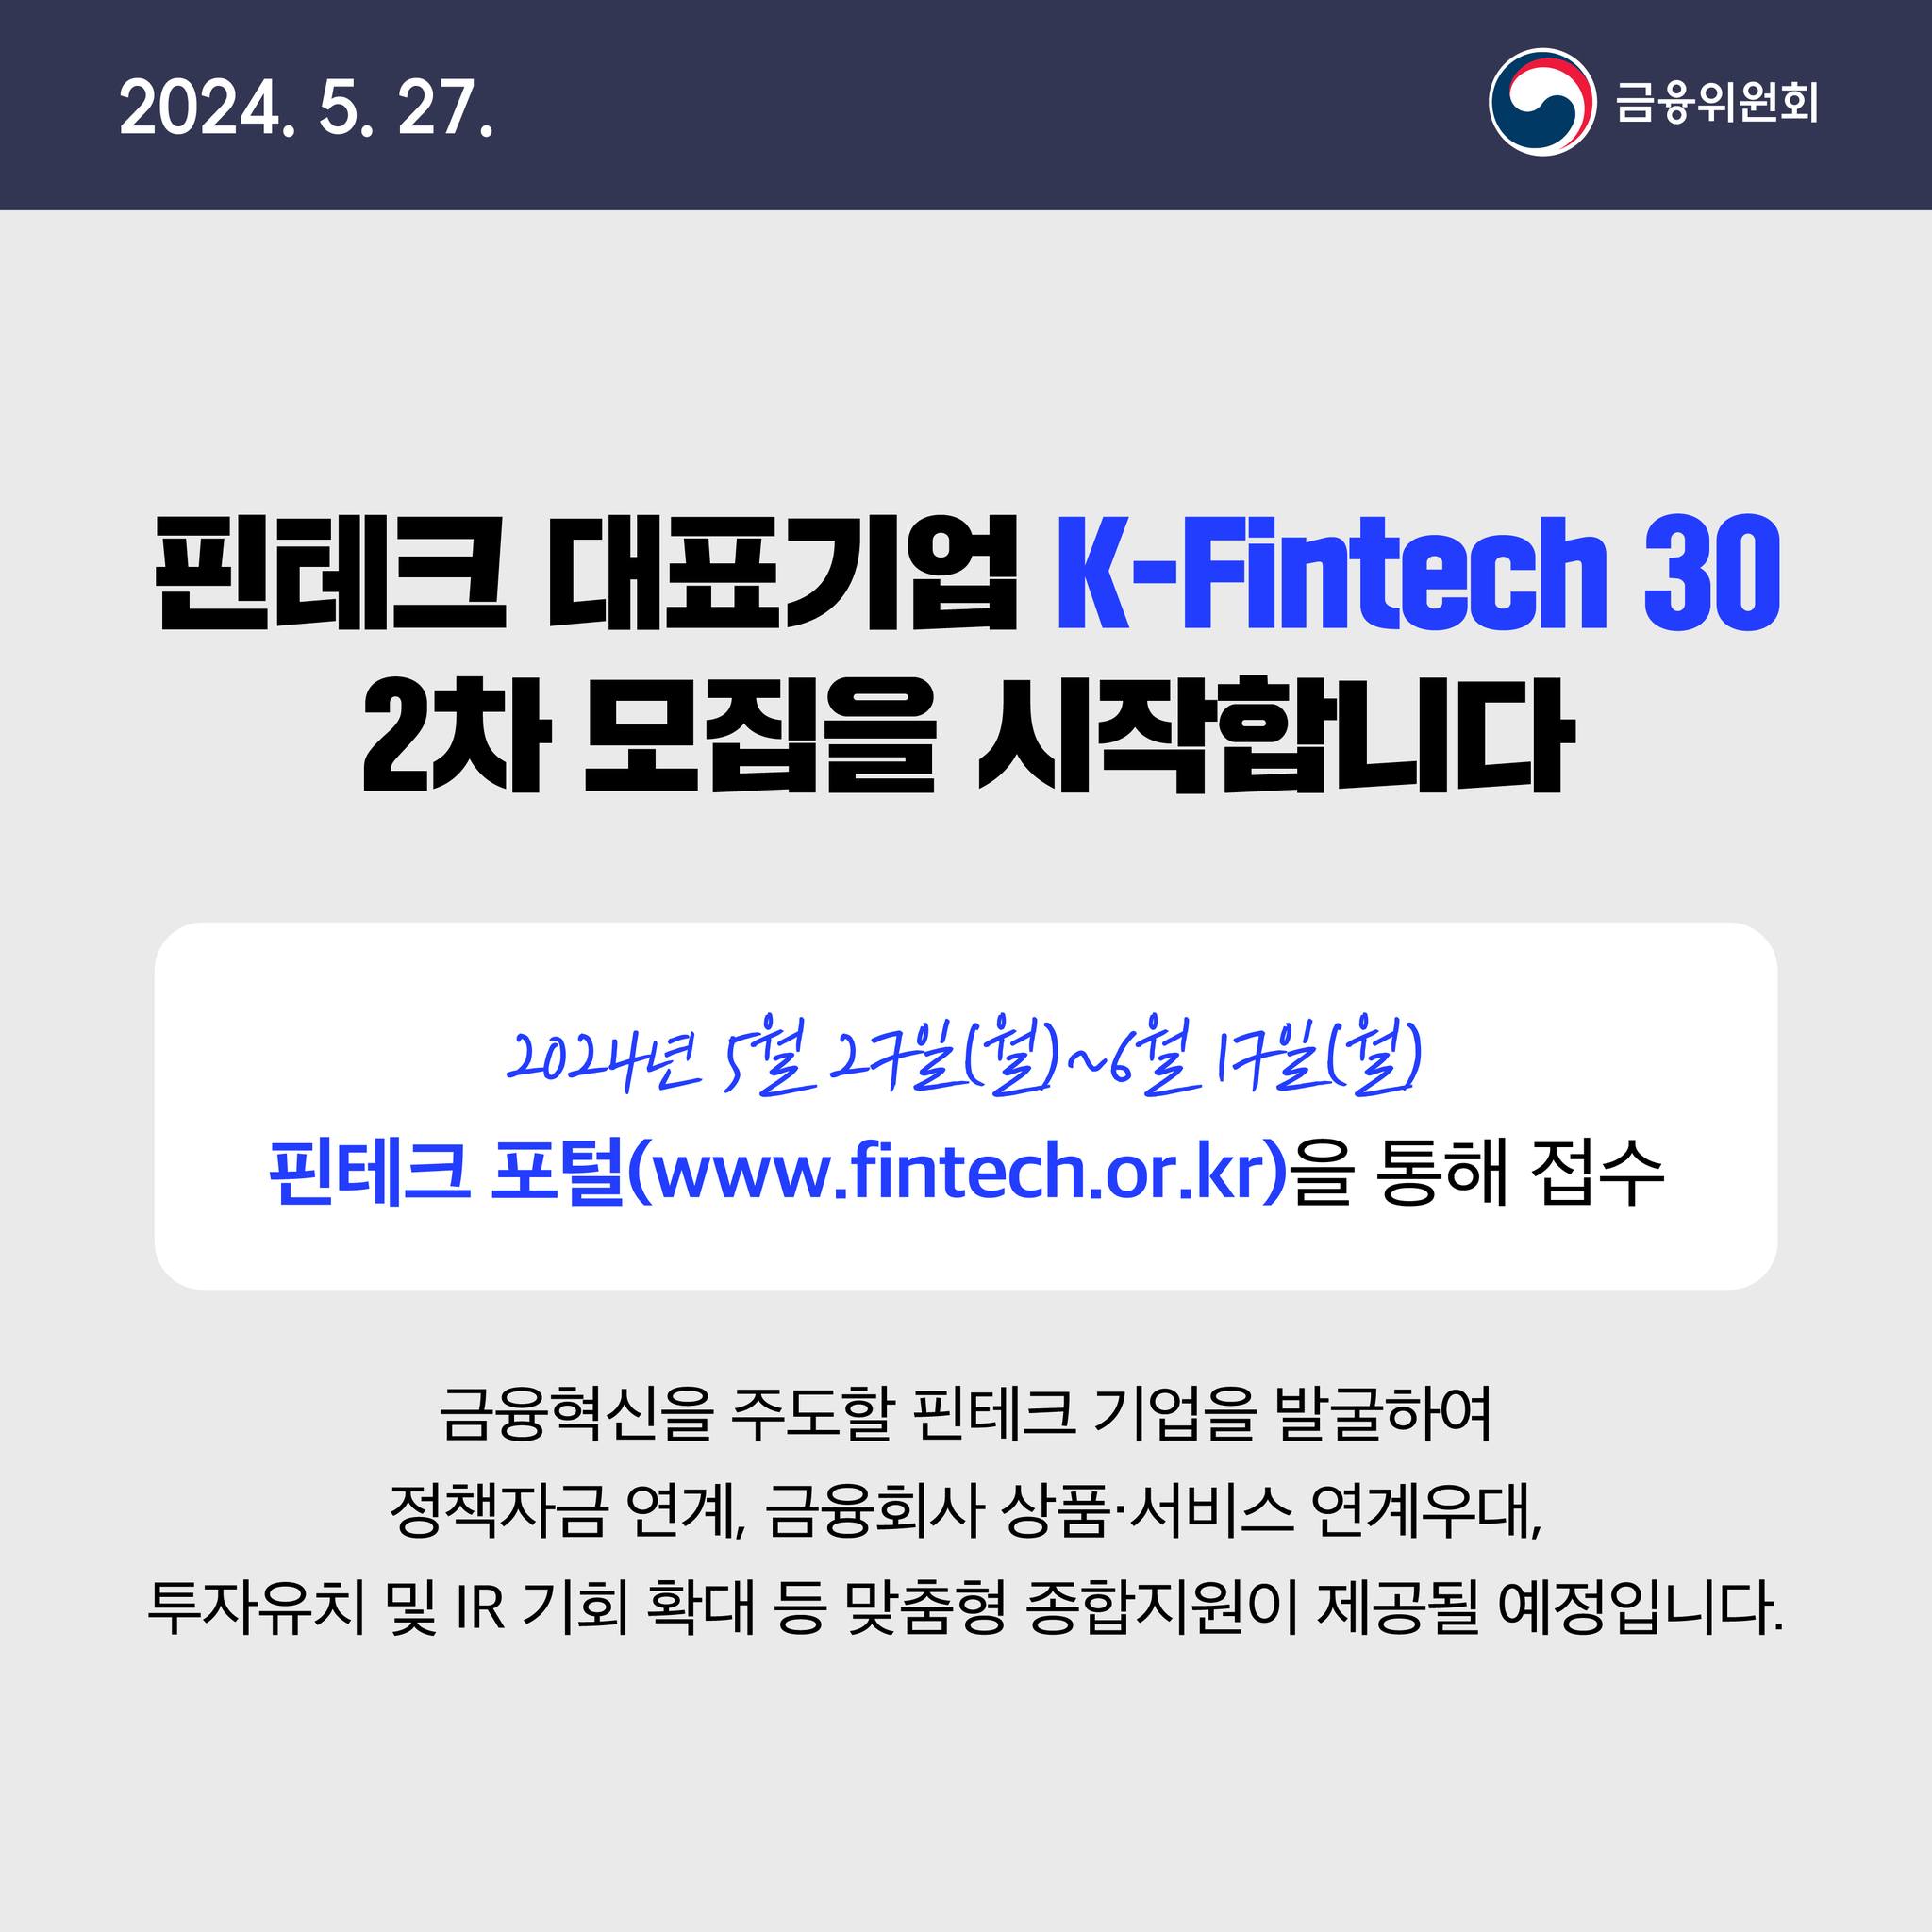 2024. 5. 27. 핀테크 대표기업 K-Fintech 30 2차 모집을 시작합니다. 2024년 5월 27일(월)~6월 17일(월) 핀테크 포털(www.fintech.or.kr)을 통해 접수 금융혁신을 주도할 핀테크 기업을 발굴하여 정책자금 연계, 금융회사 상품·서비스 연계우대, 투자유치 및 IR 기회 확대 등 맞춤형 종합지원이 제공될 예정입니다.